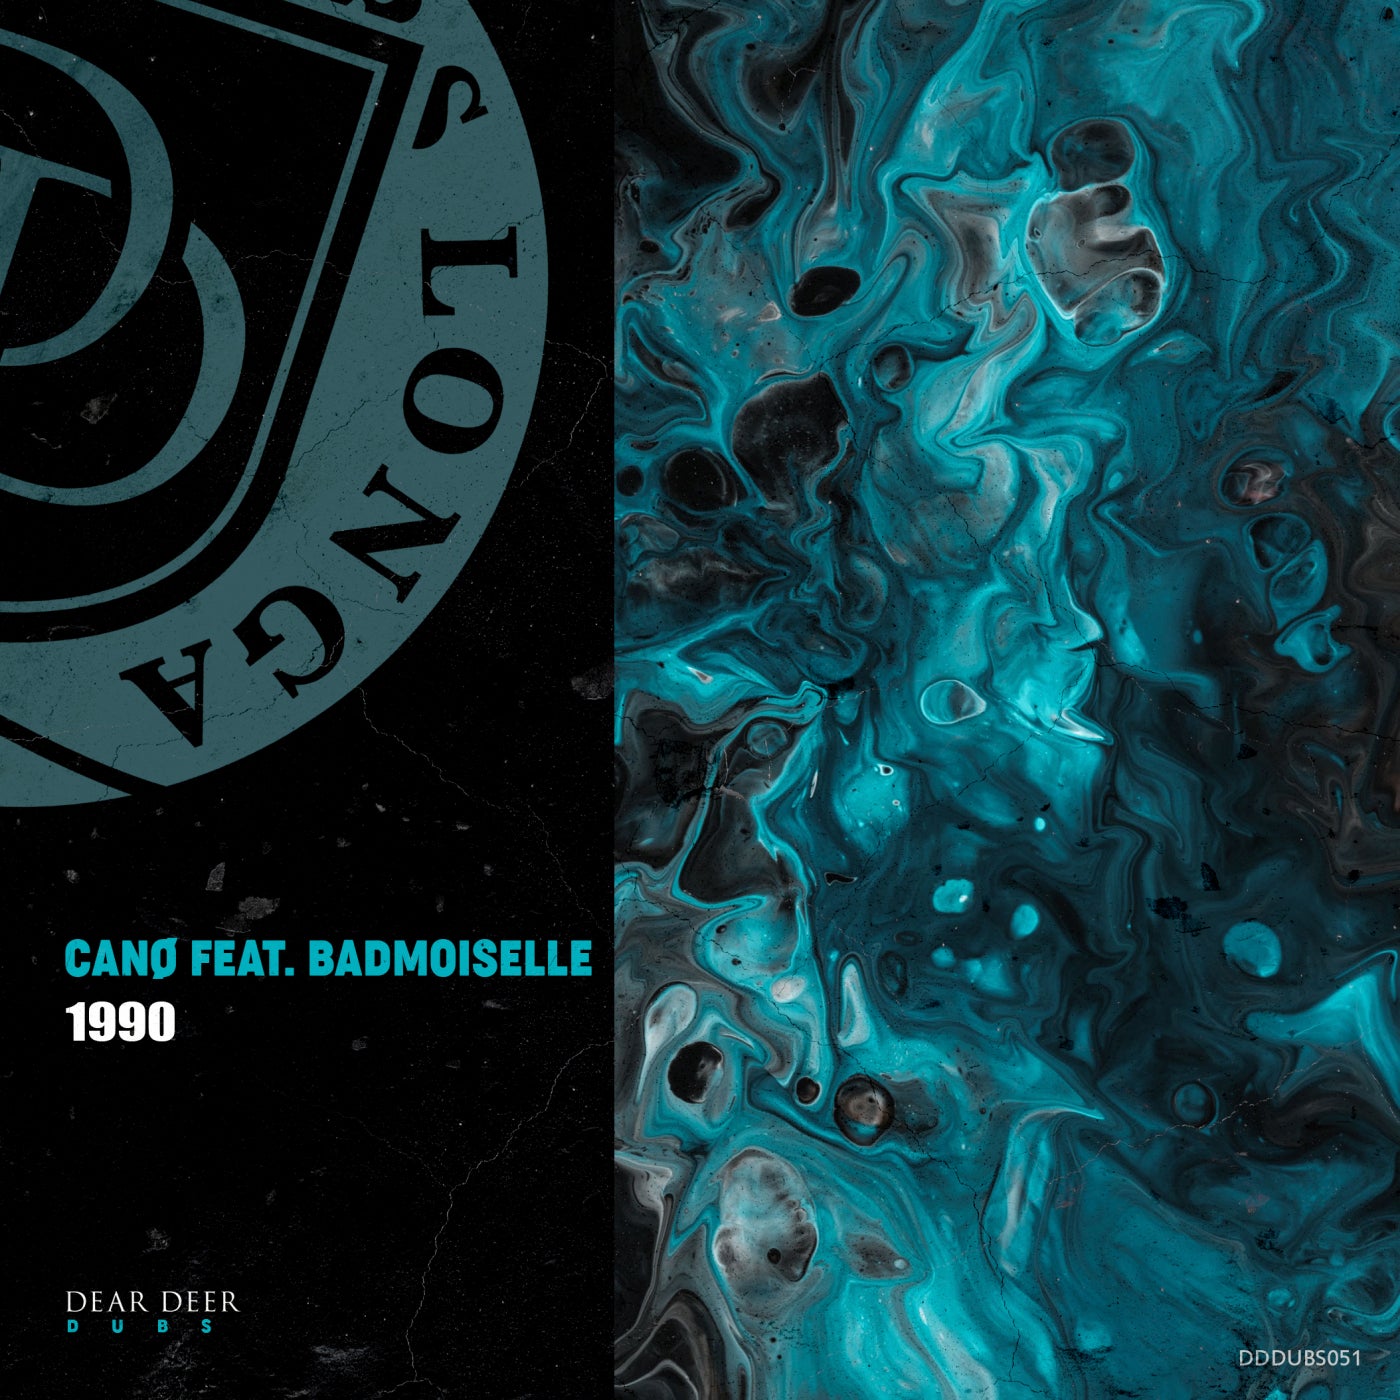 Canø, Badmoiselle – 1990 feat Badmoiselle [DDDUBS051]